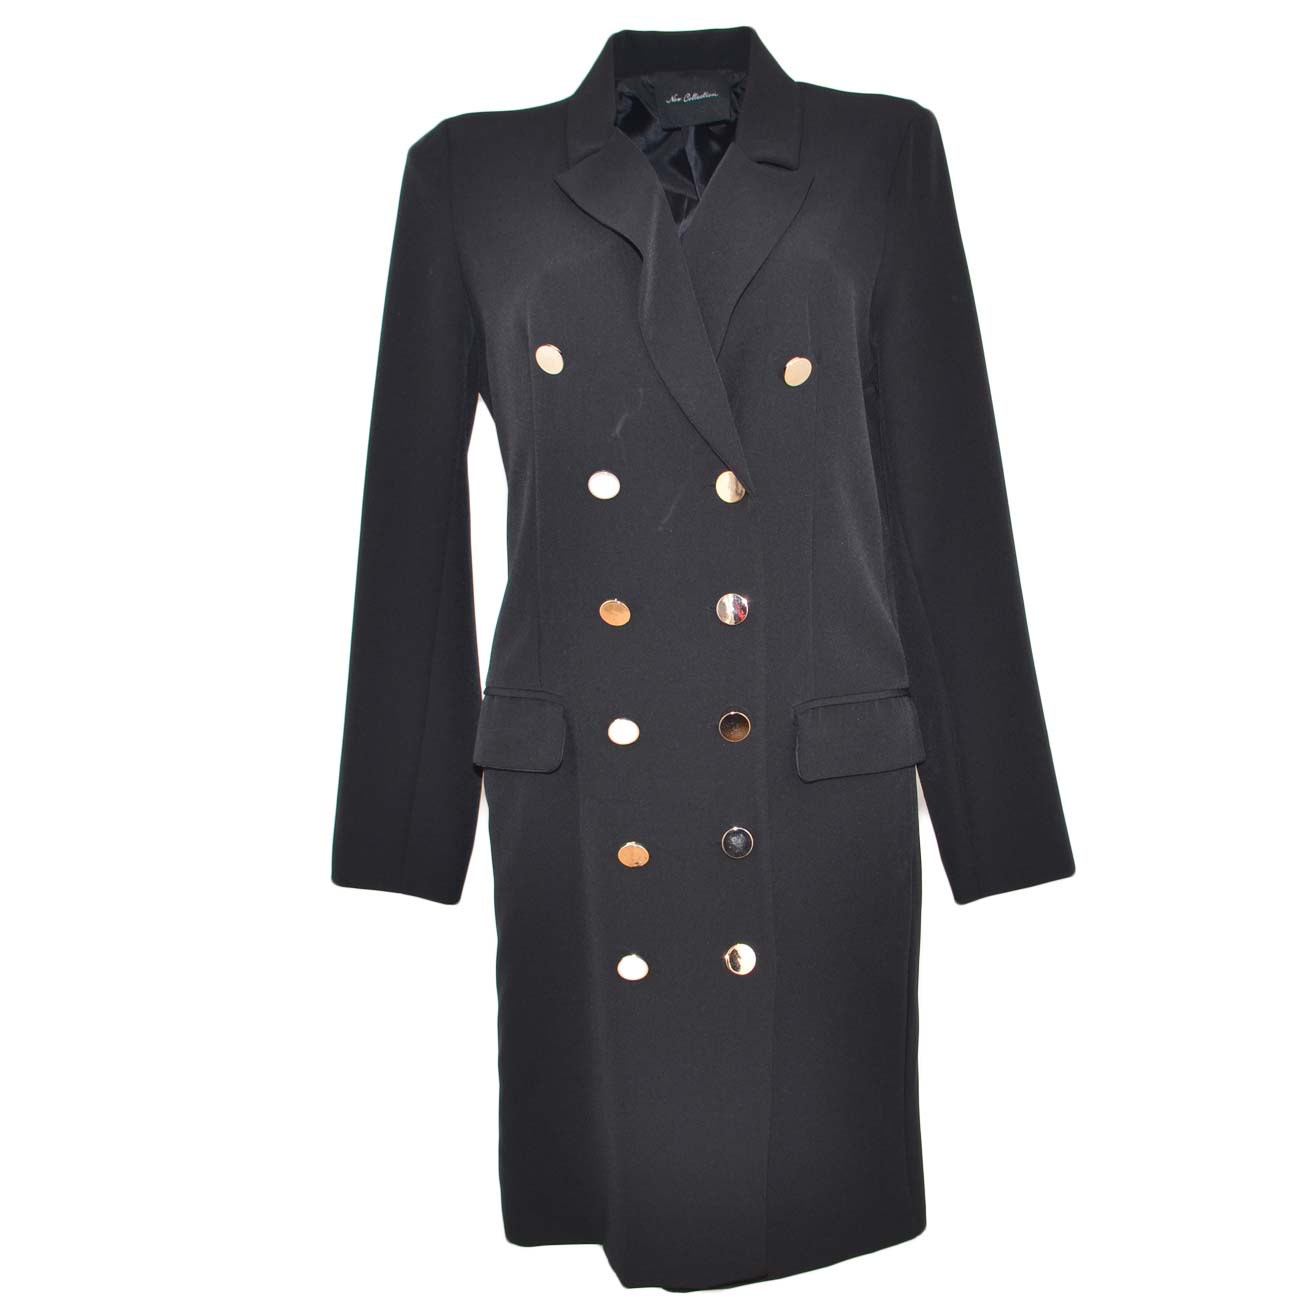 Vestito blazer giacca doppio petto nero doppio petto a manica lunga con bottone oro e spacco moda glamour